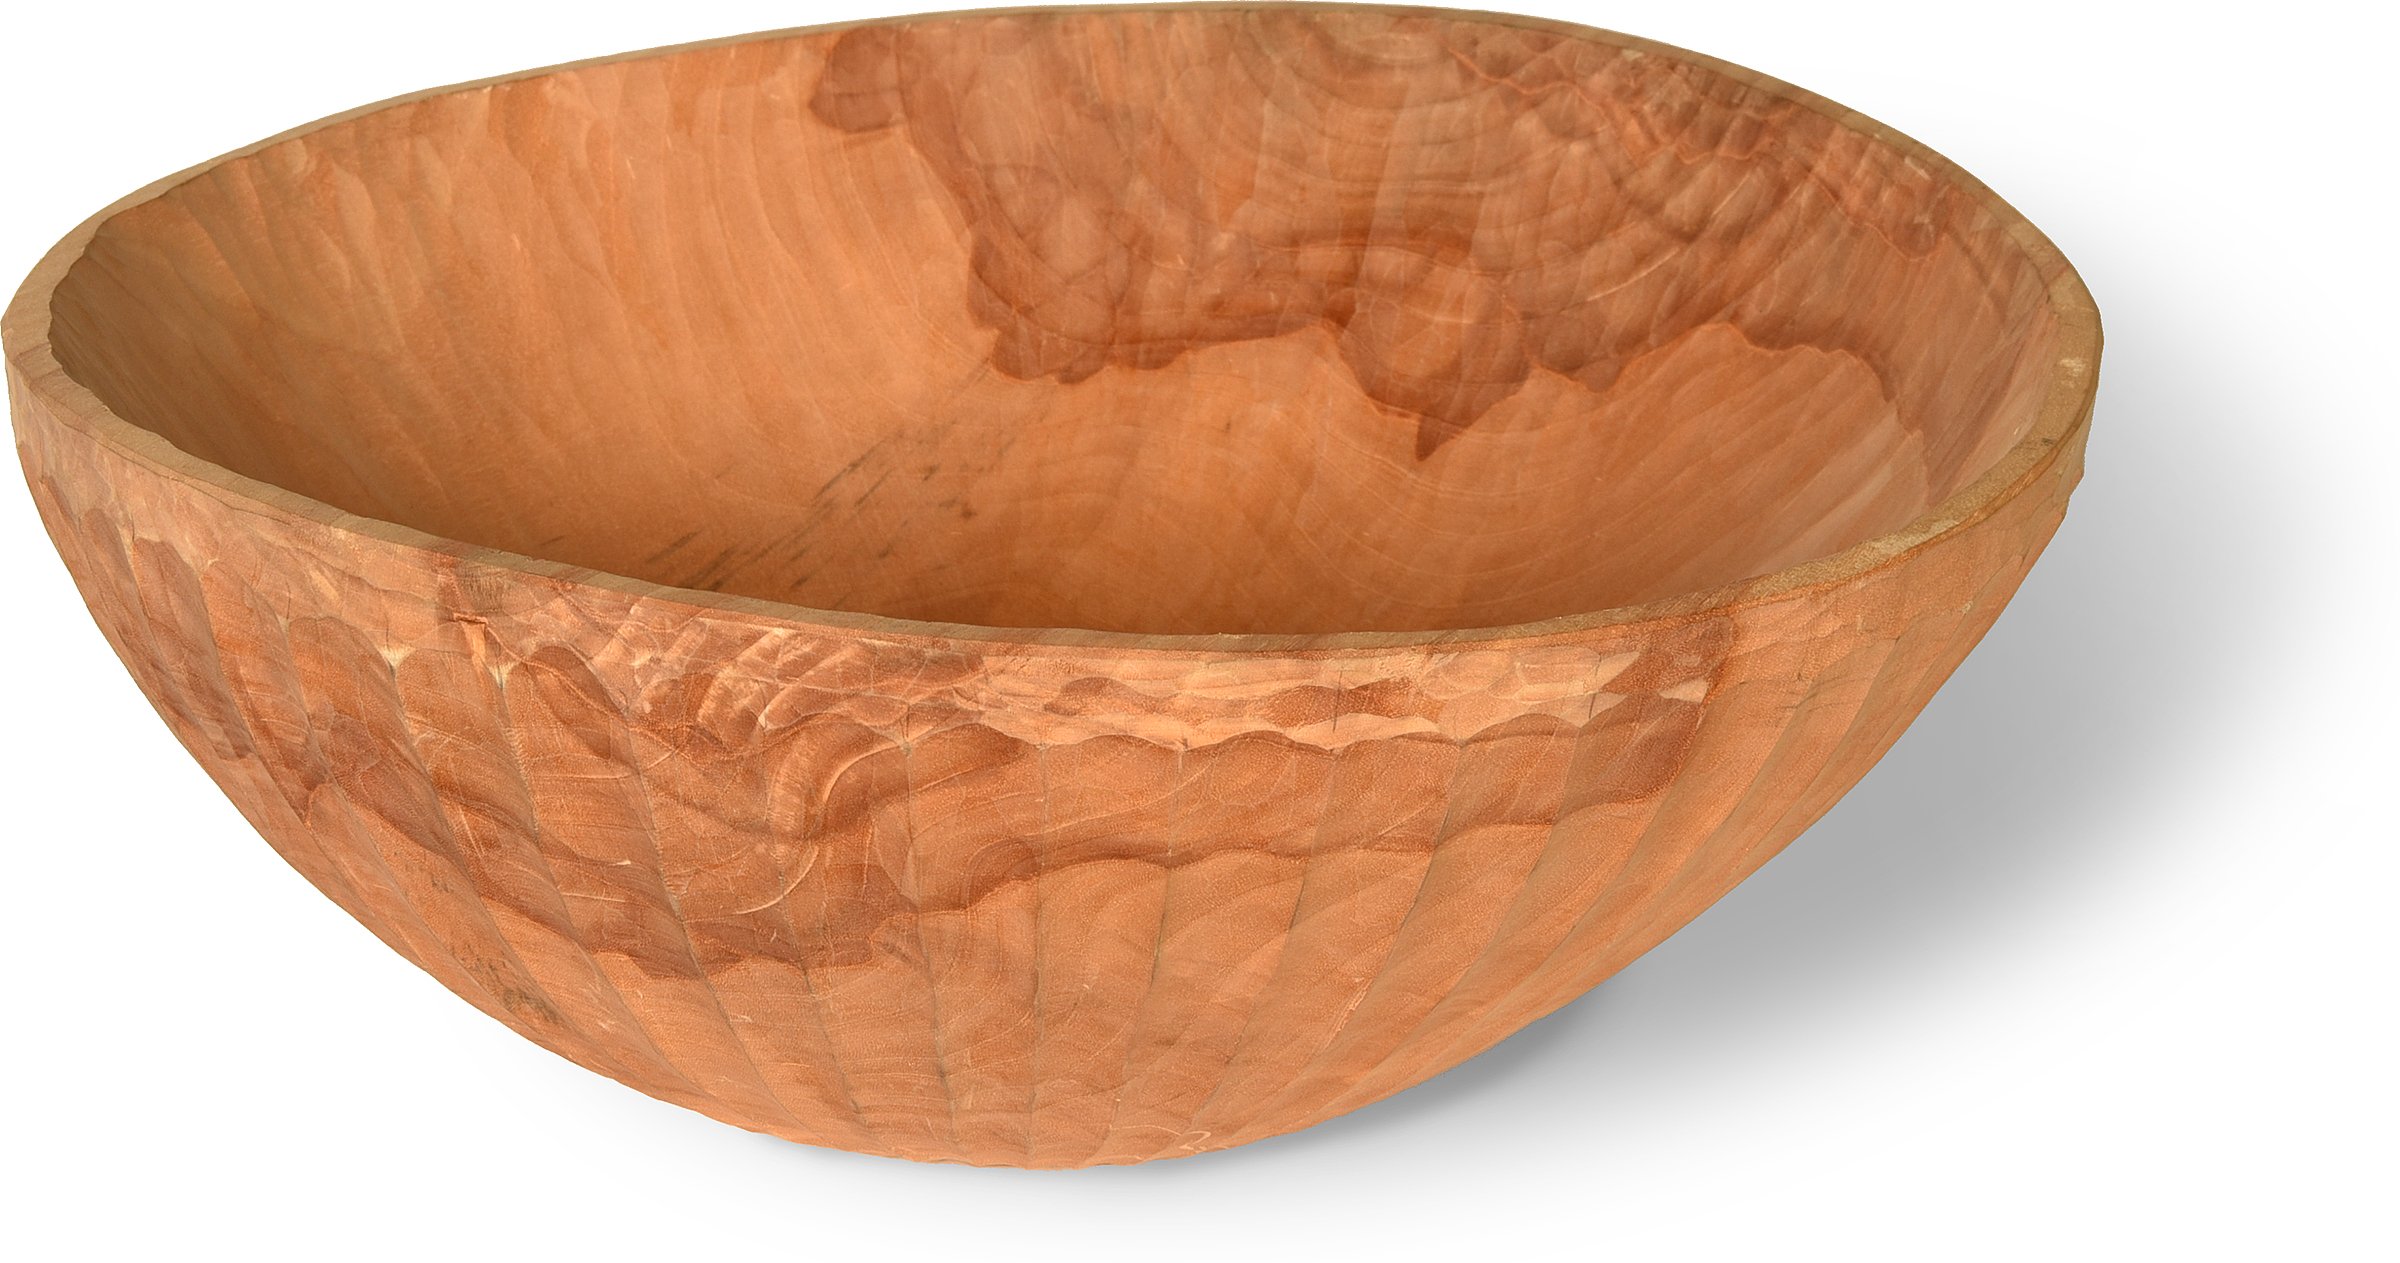 Carved Birch Bowl